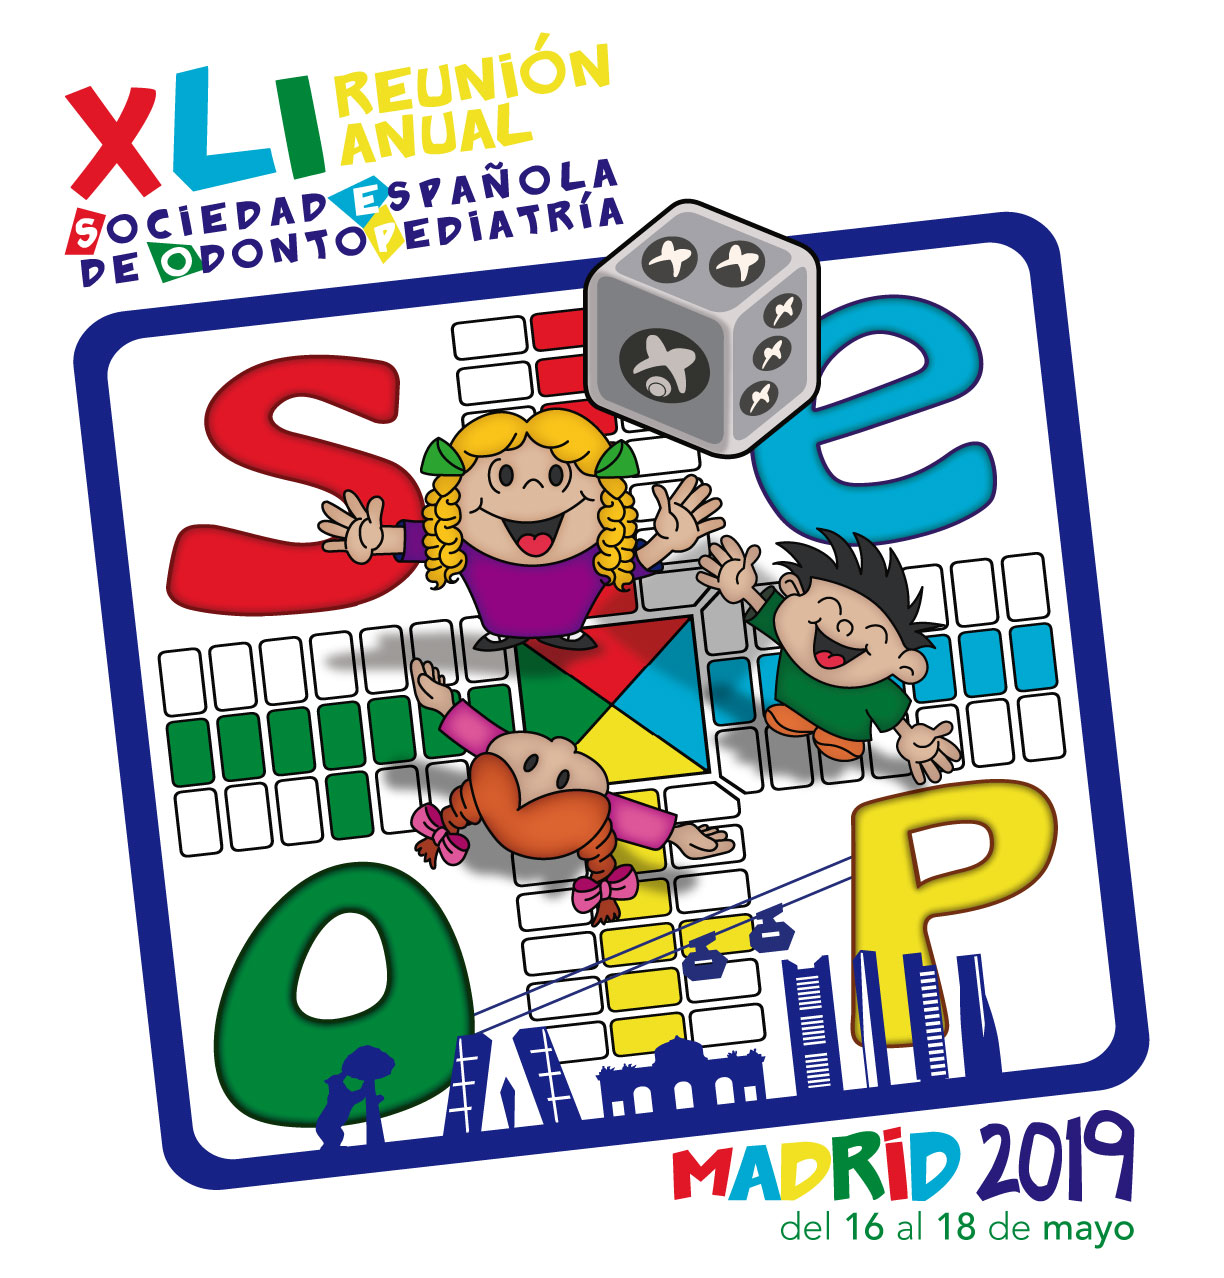 La Sociedad Española de Odontopediatría (Seop) celebrará su XLI Reunión Anual entre los días 15 y 18 de mayo de 2019 en la ciudad de Madrid.